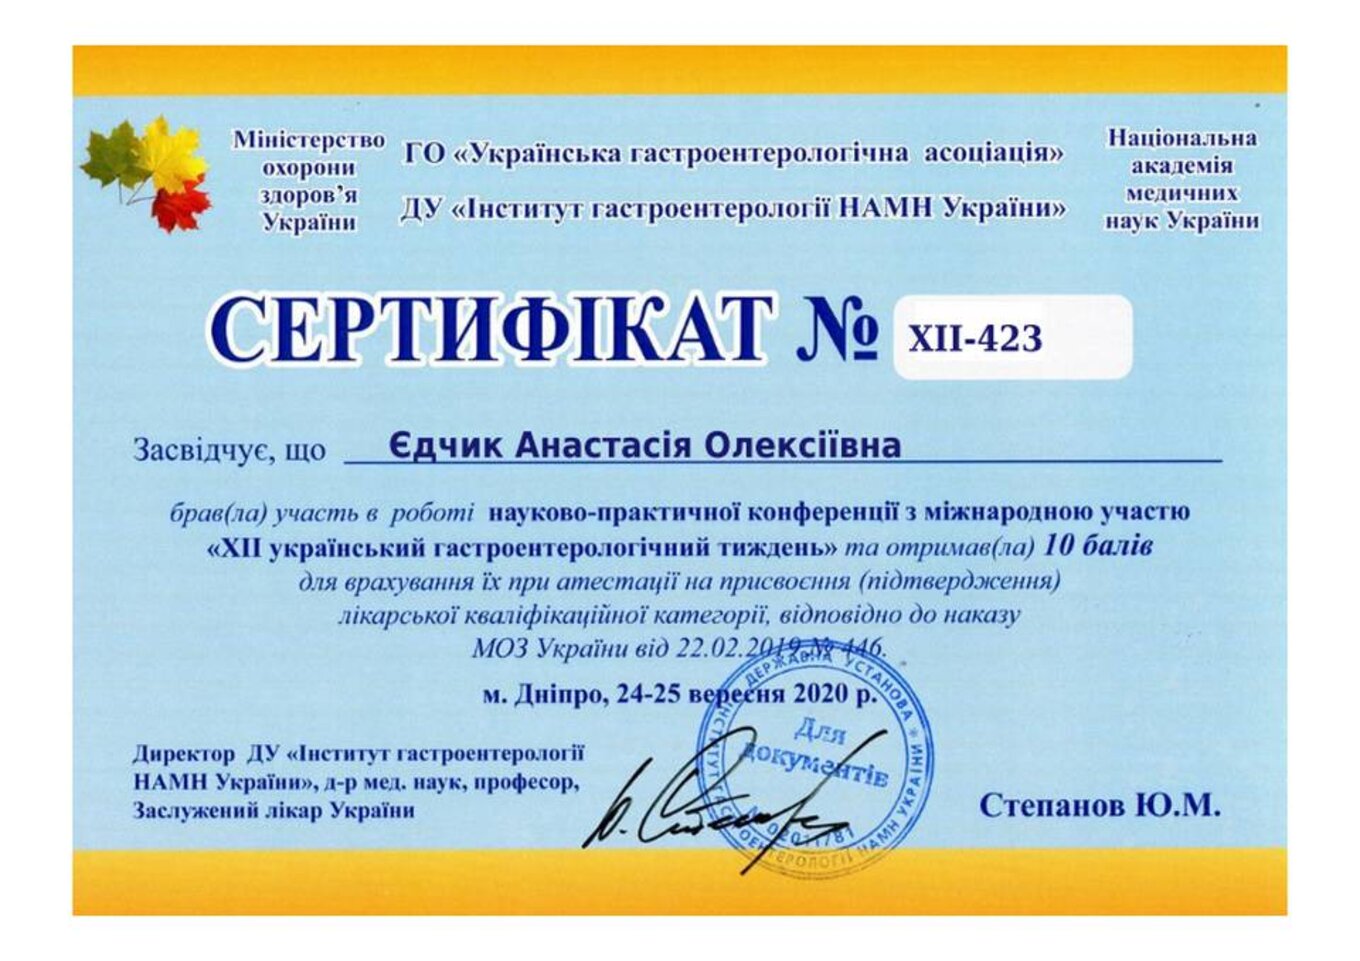 certificates/yedchik-anastasiya-oleksiyivna/erc-edchik-cert-58.jpg